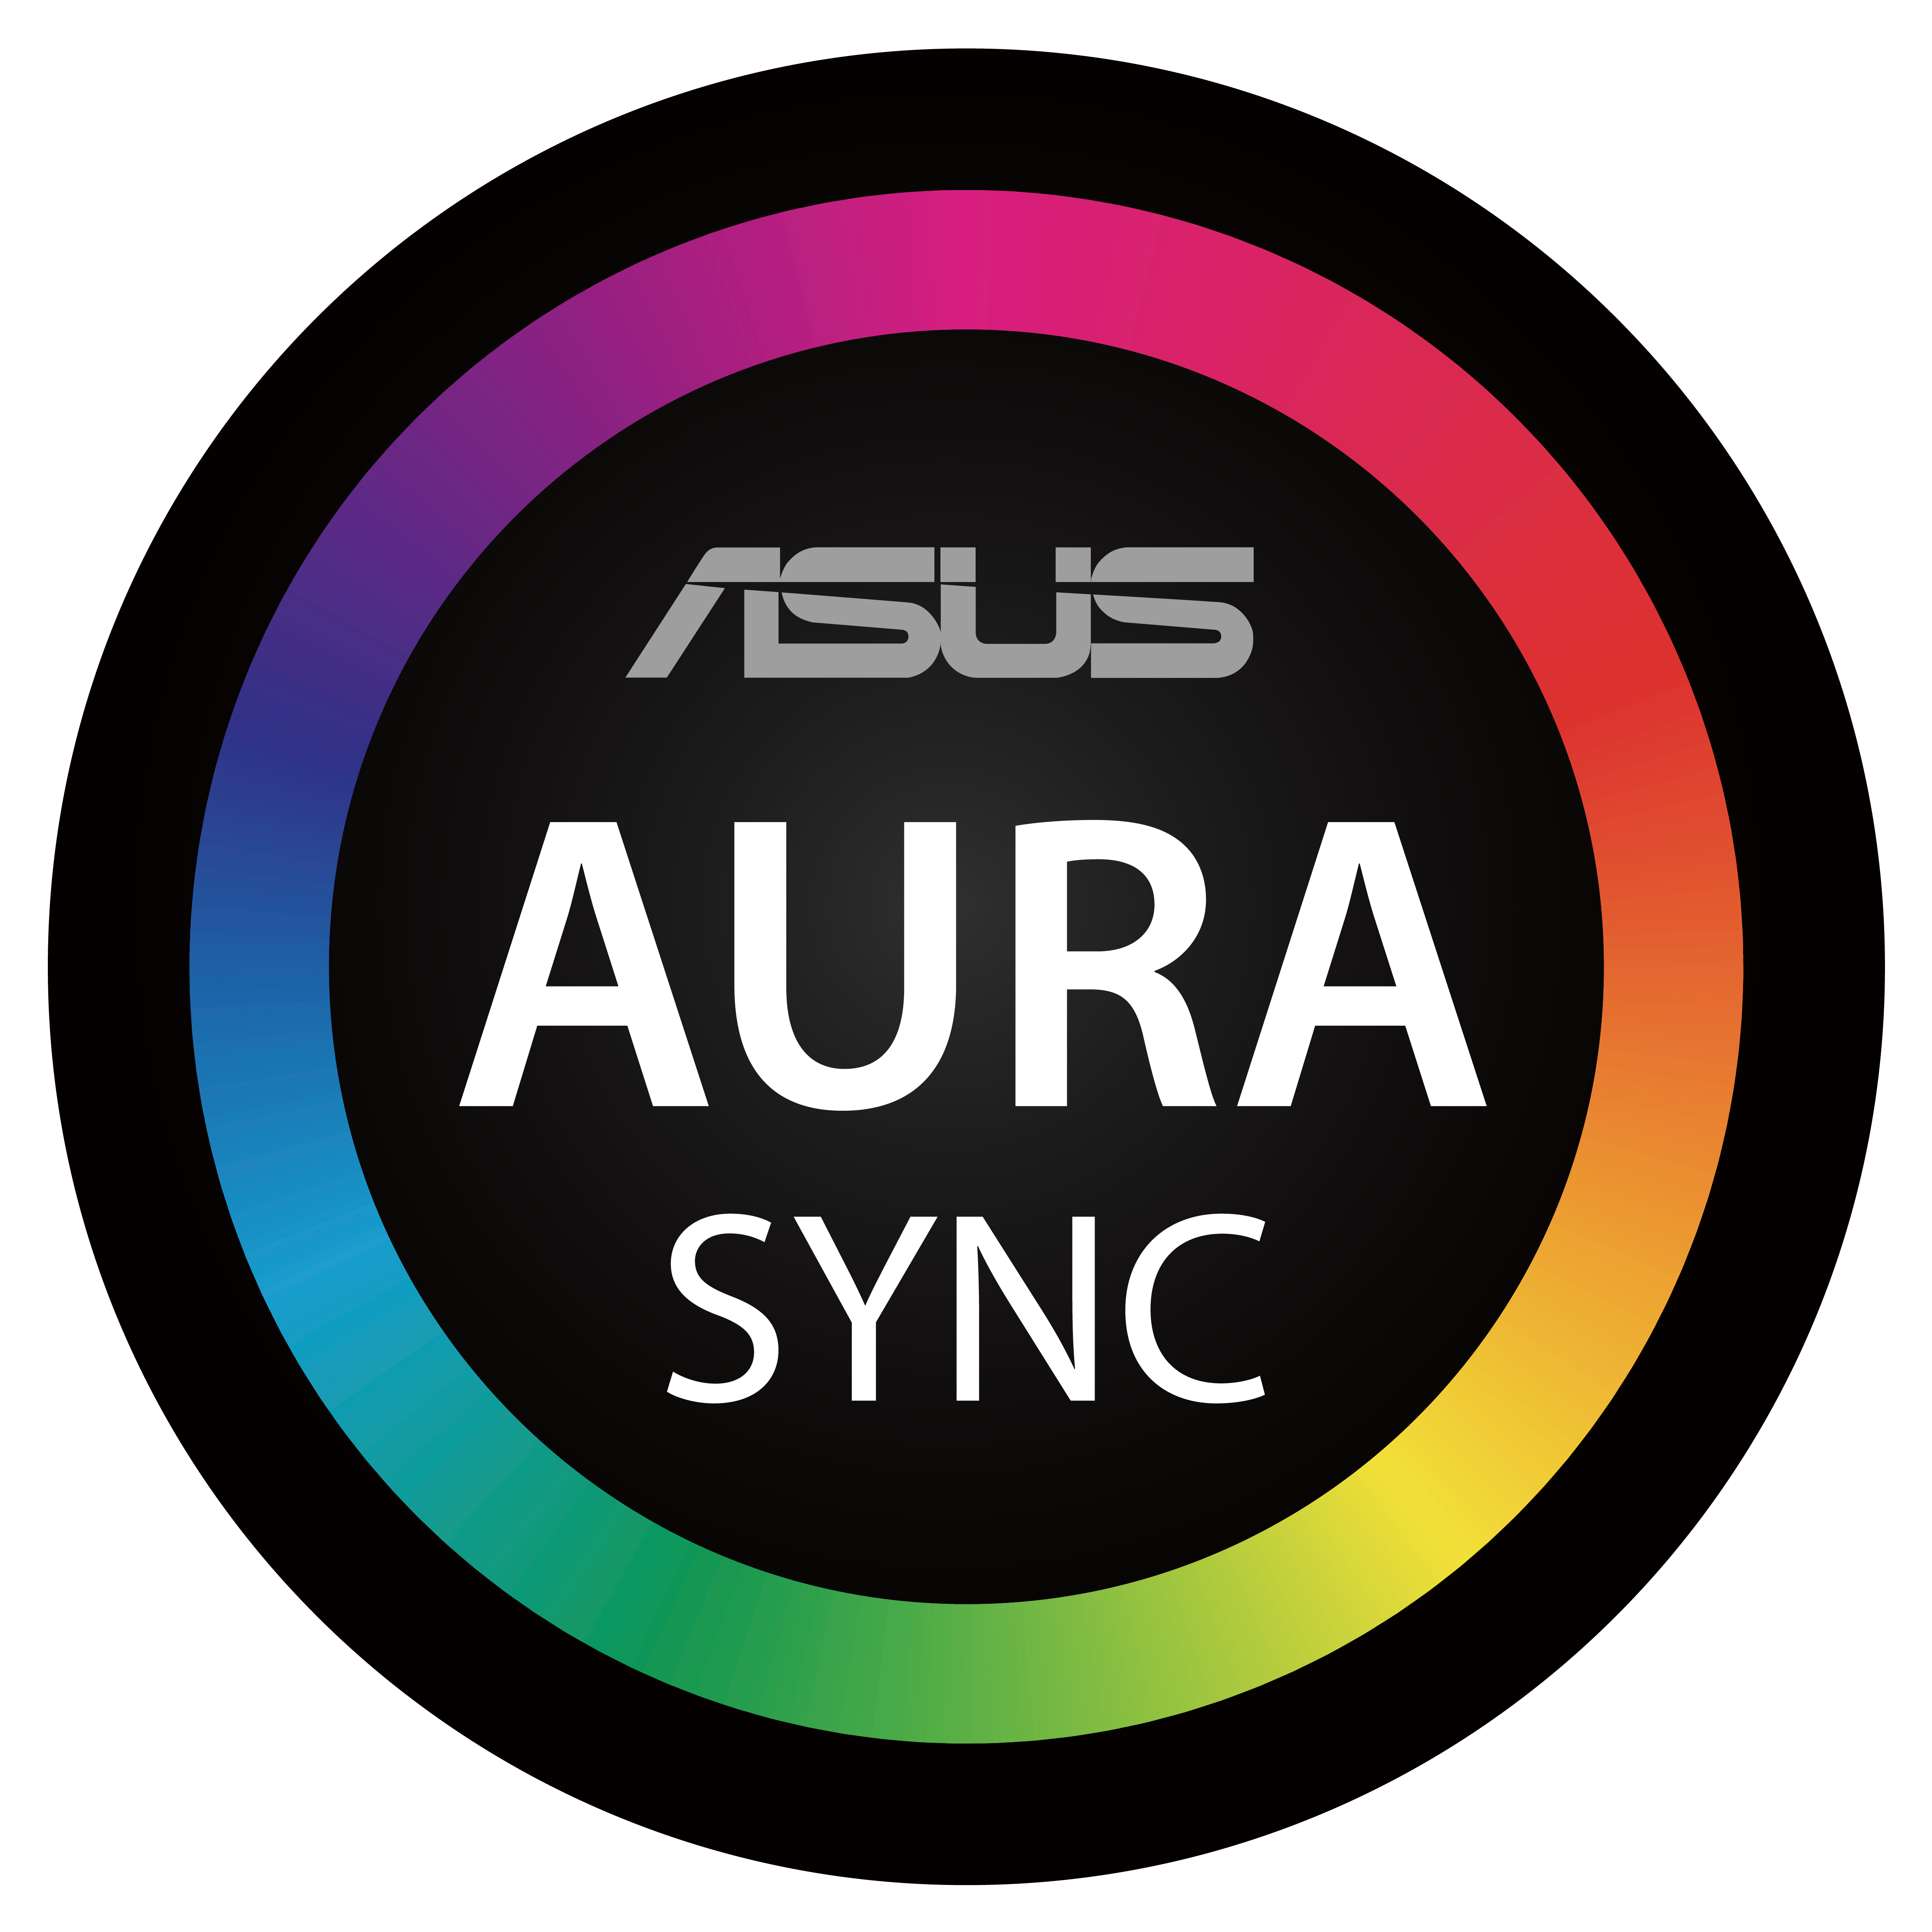 ASUS Aura Sync pictogram